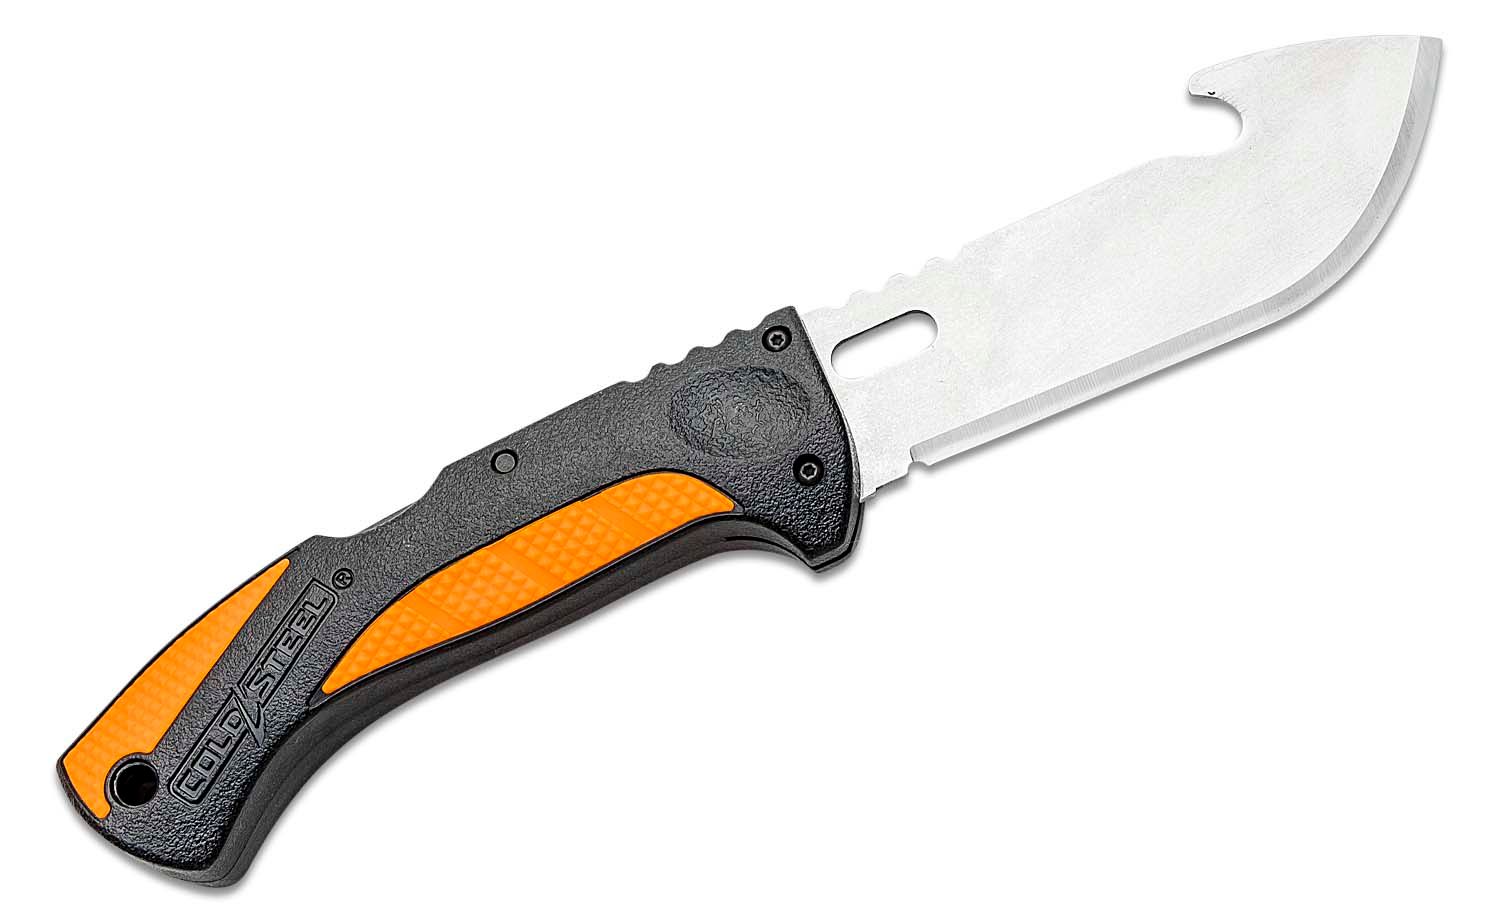 Cold Steel Hunting Kit / 5-Piece Knife Set - Black/Orange